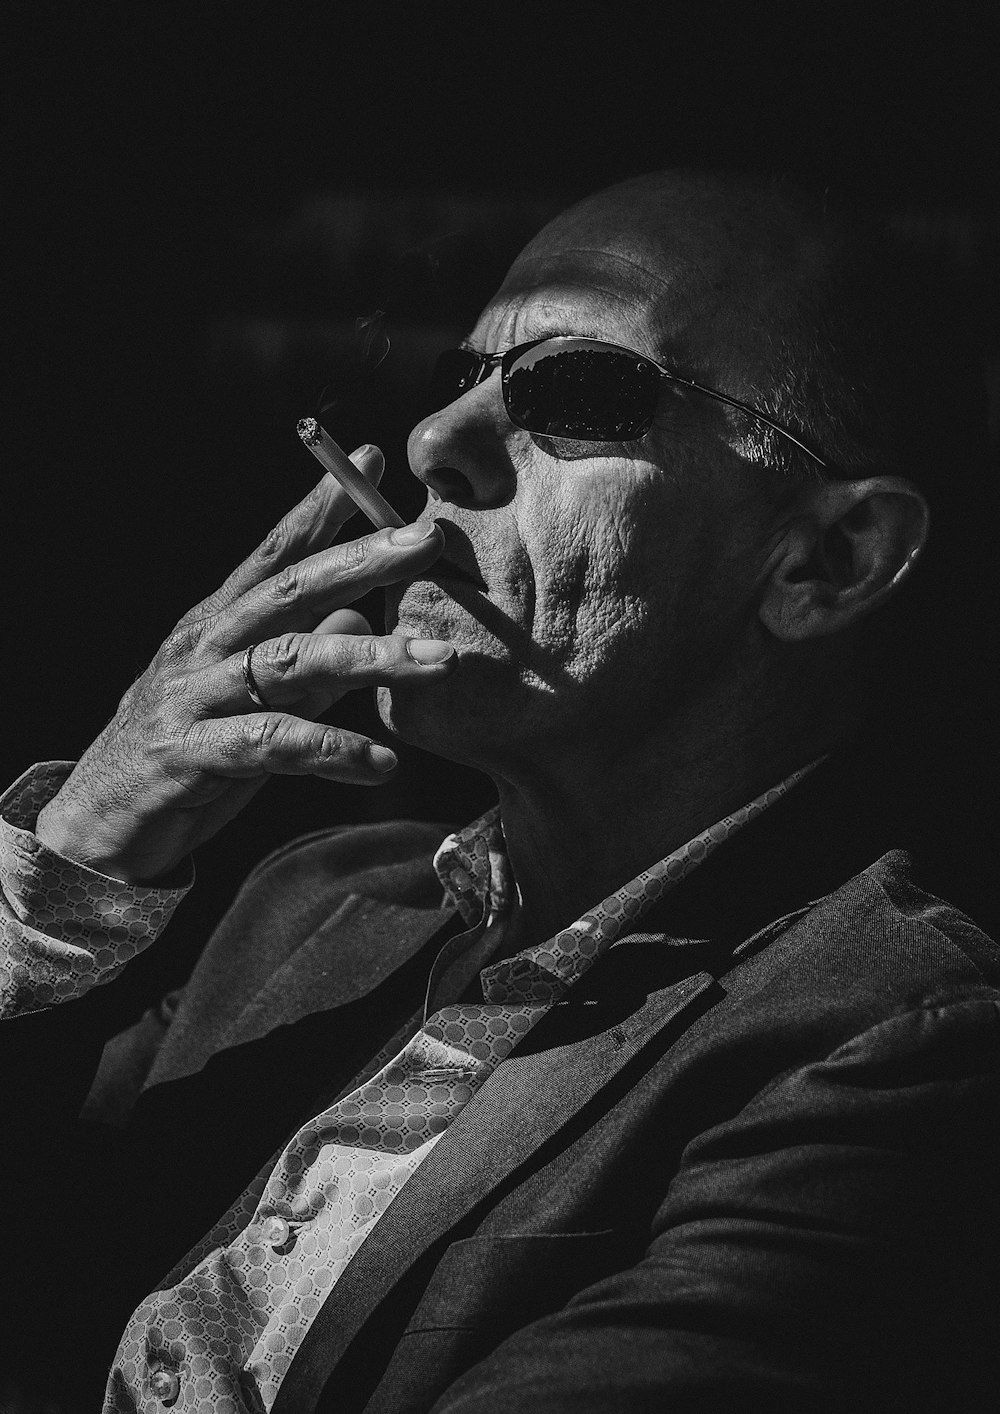 Mann raucht Zigarette auf Schwarzweißfoto